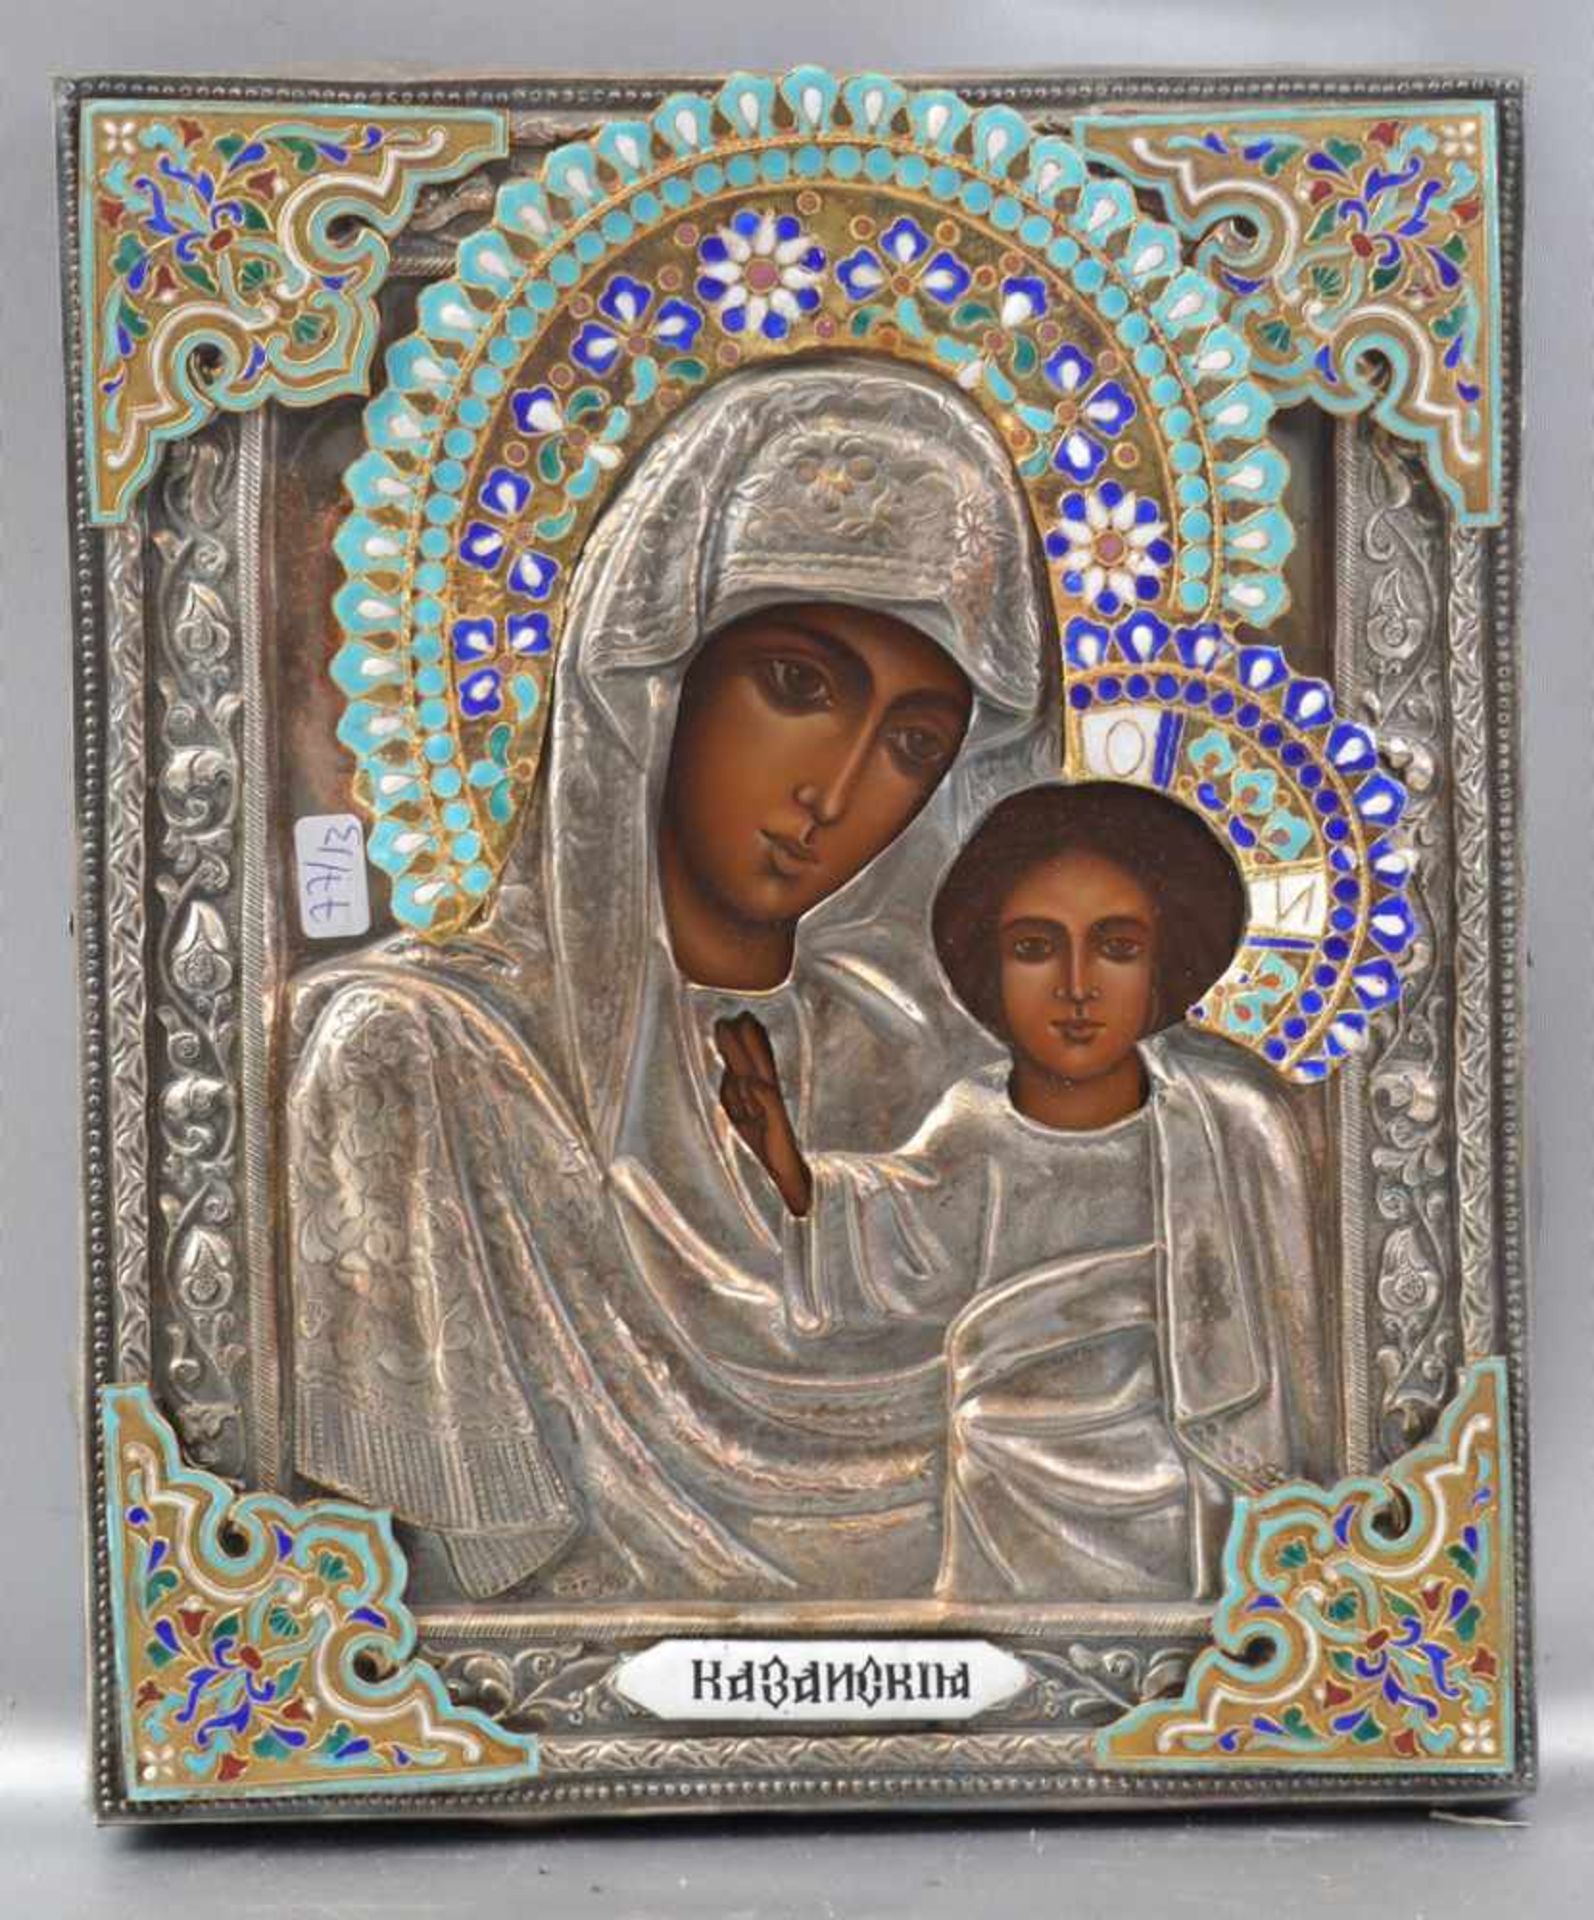 Mutter Gottes mit Kind Öl/Holz, mit silberfarbenem Oklad, mit buntem Emaille verziert, 21 X 25 cm